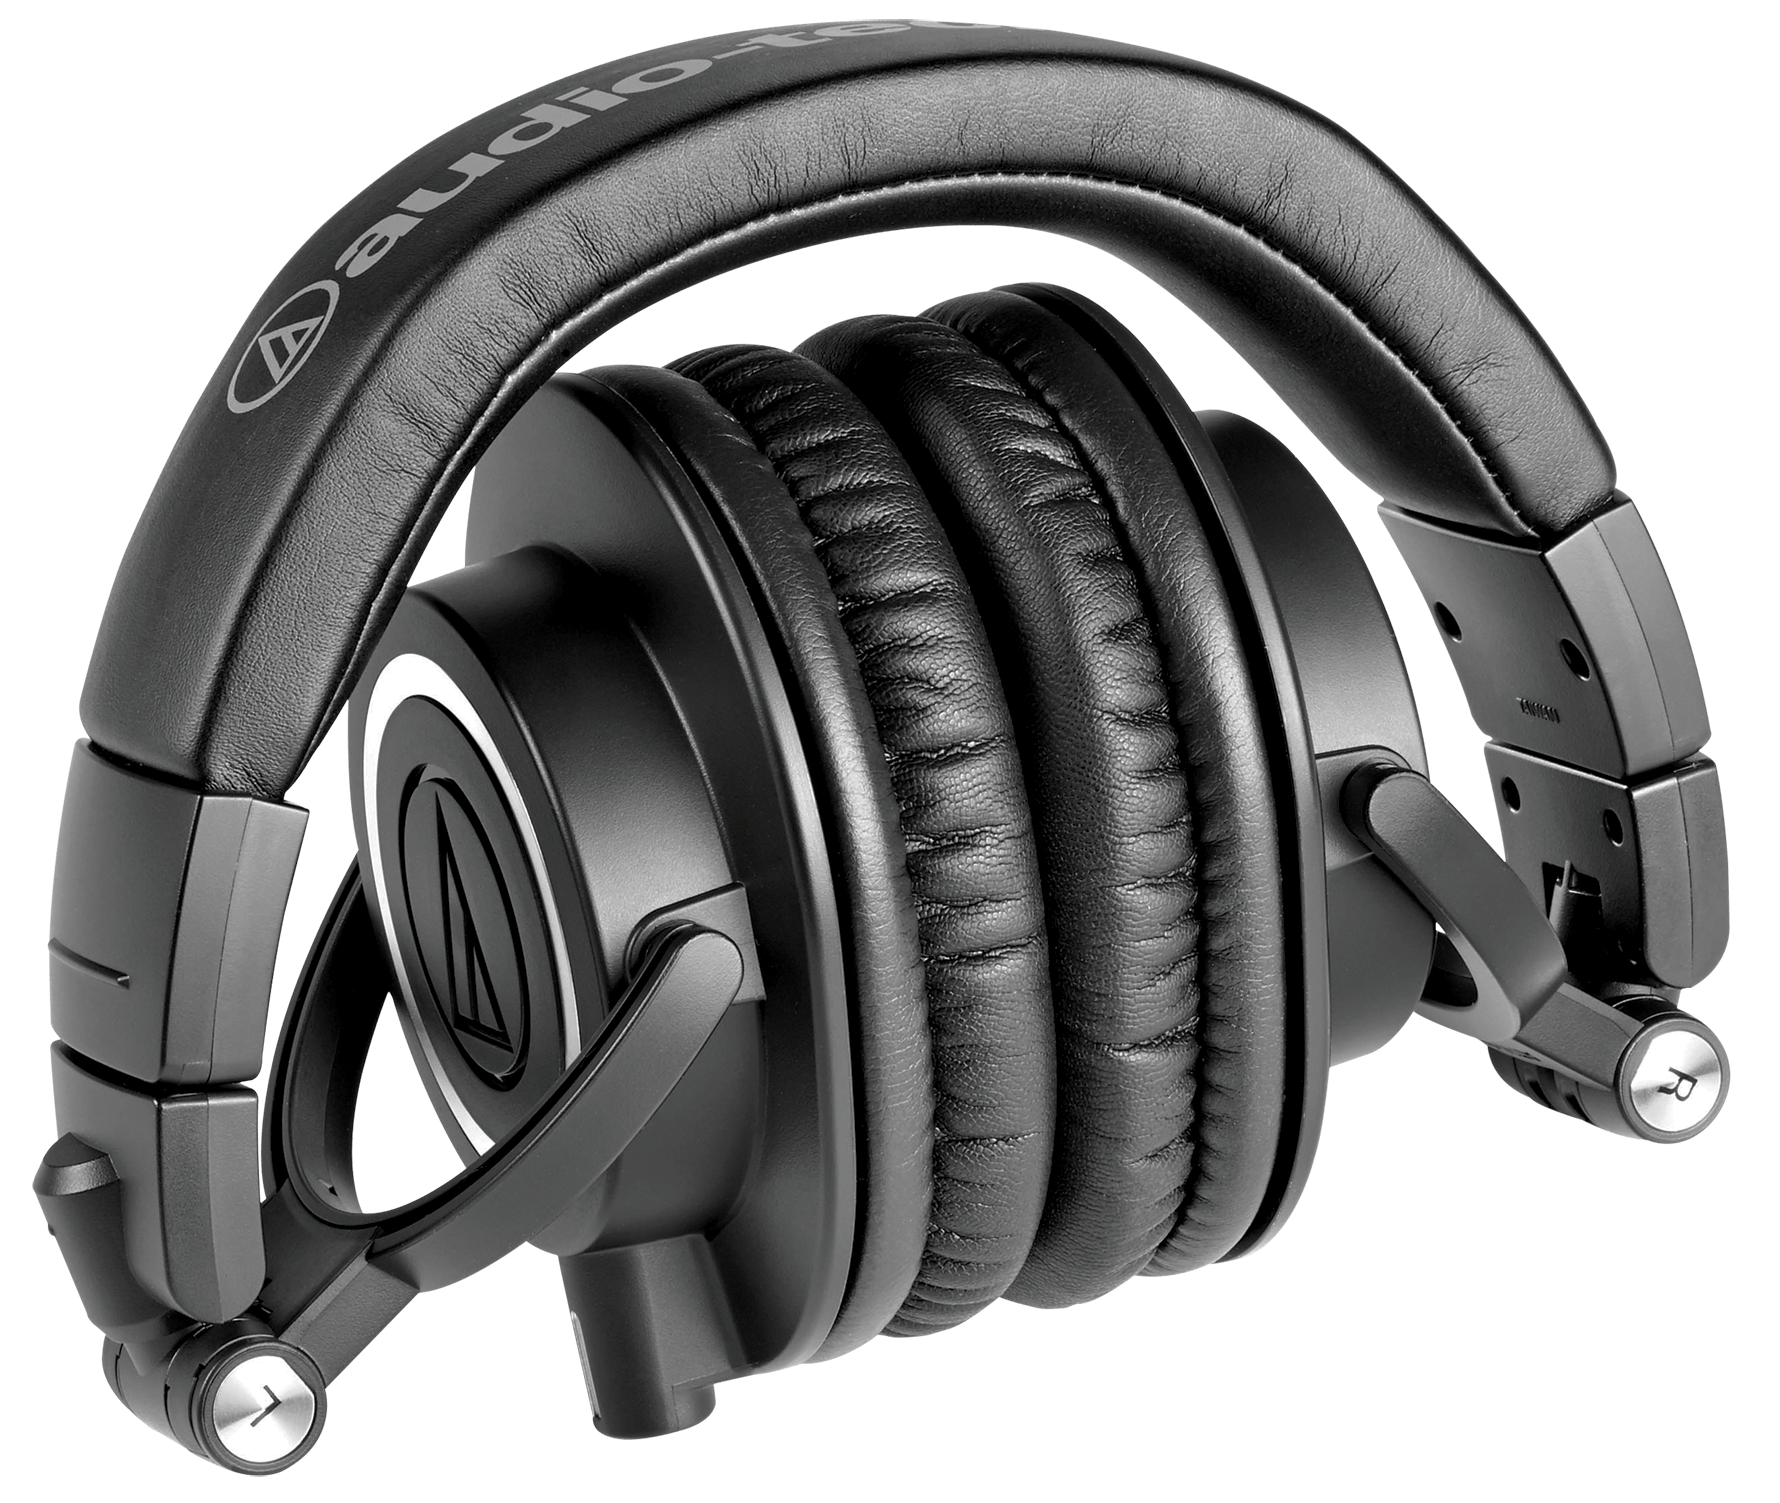 Audio-Technica ATH-M50X Headphones Collapsed